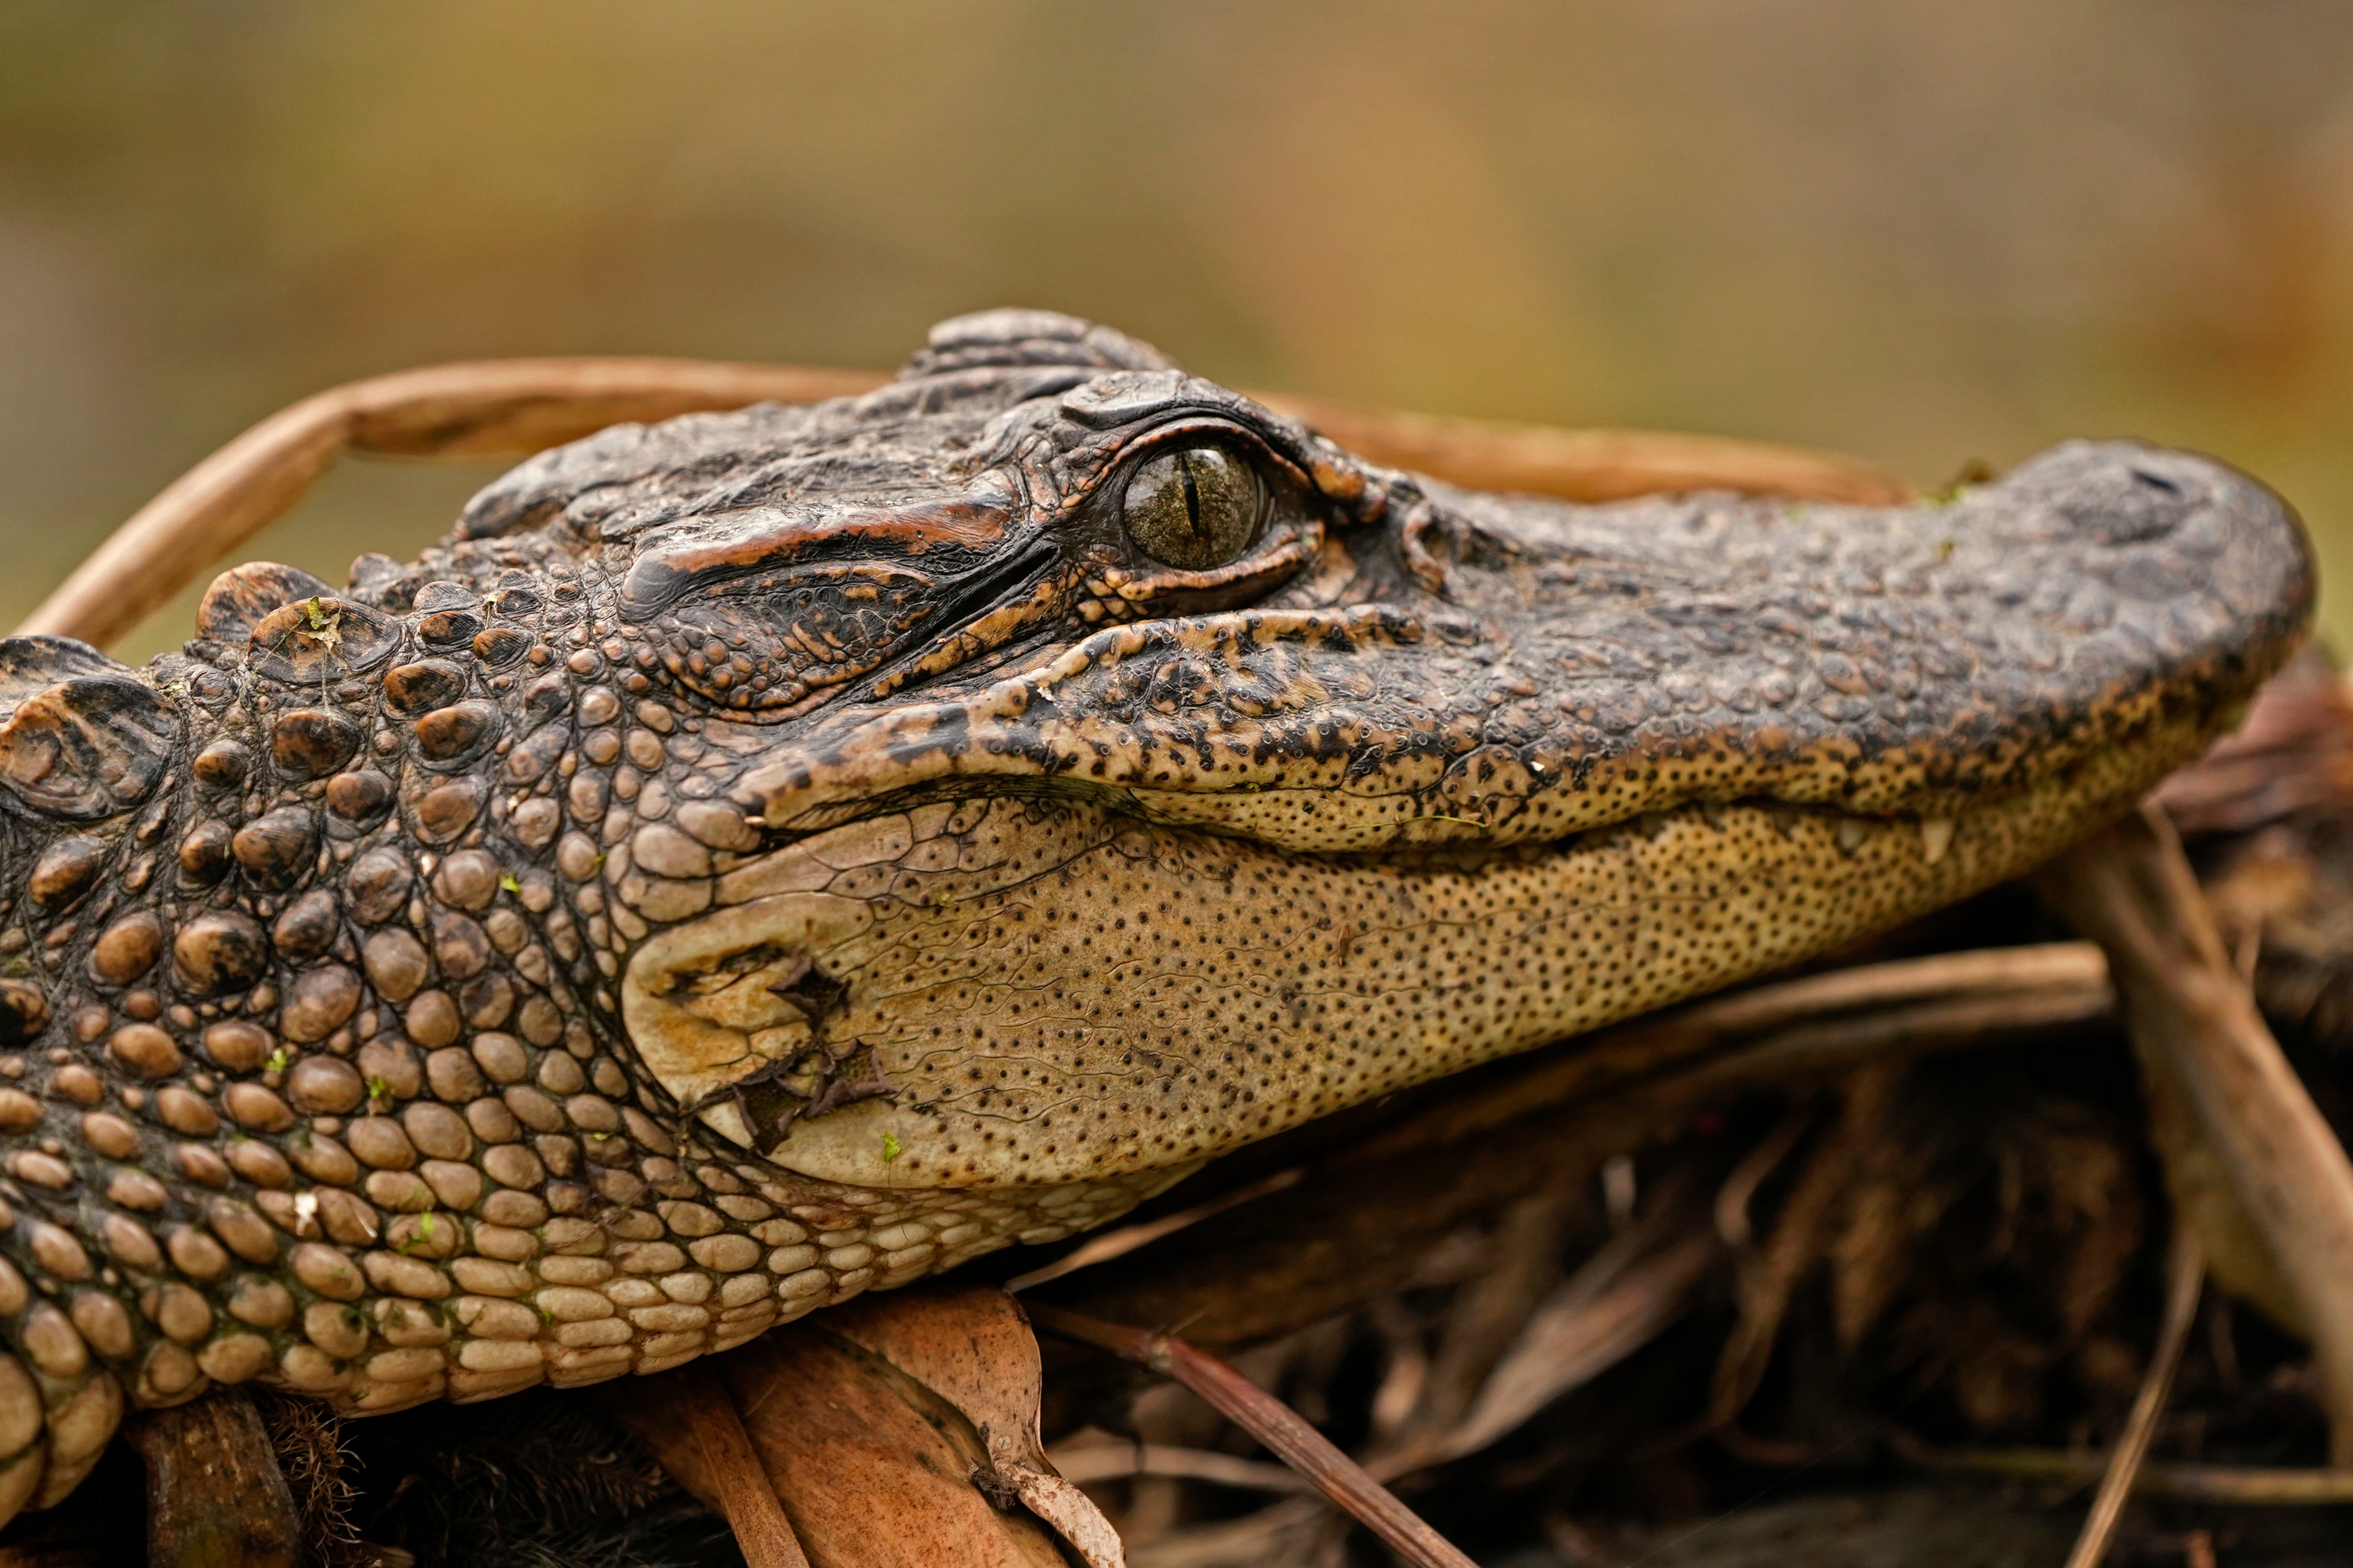 Alligator Sales Lawsuit